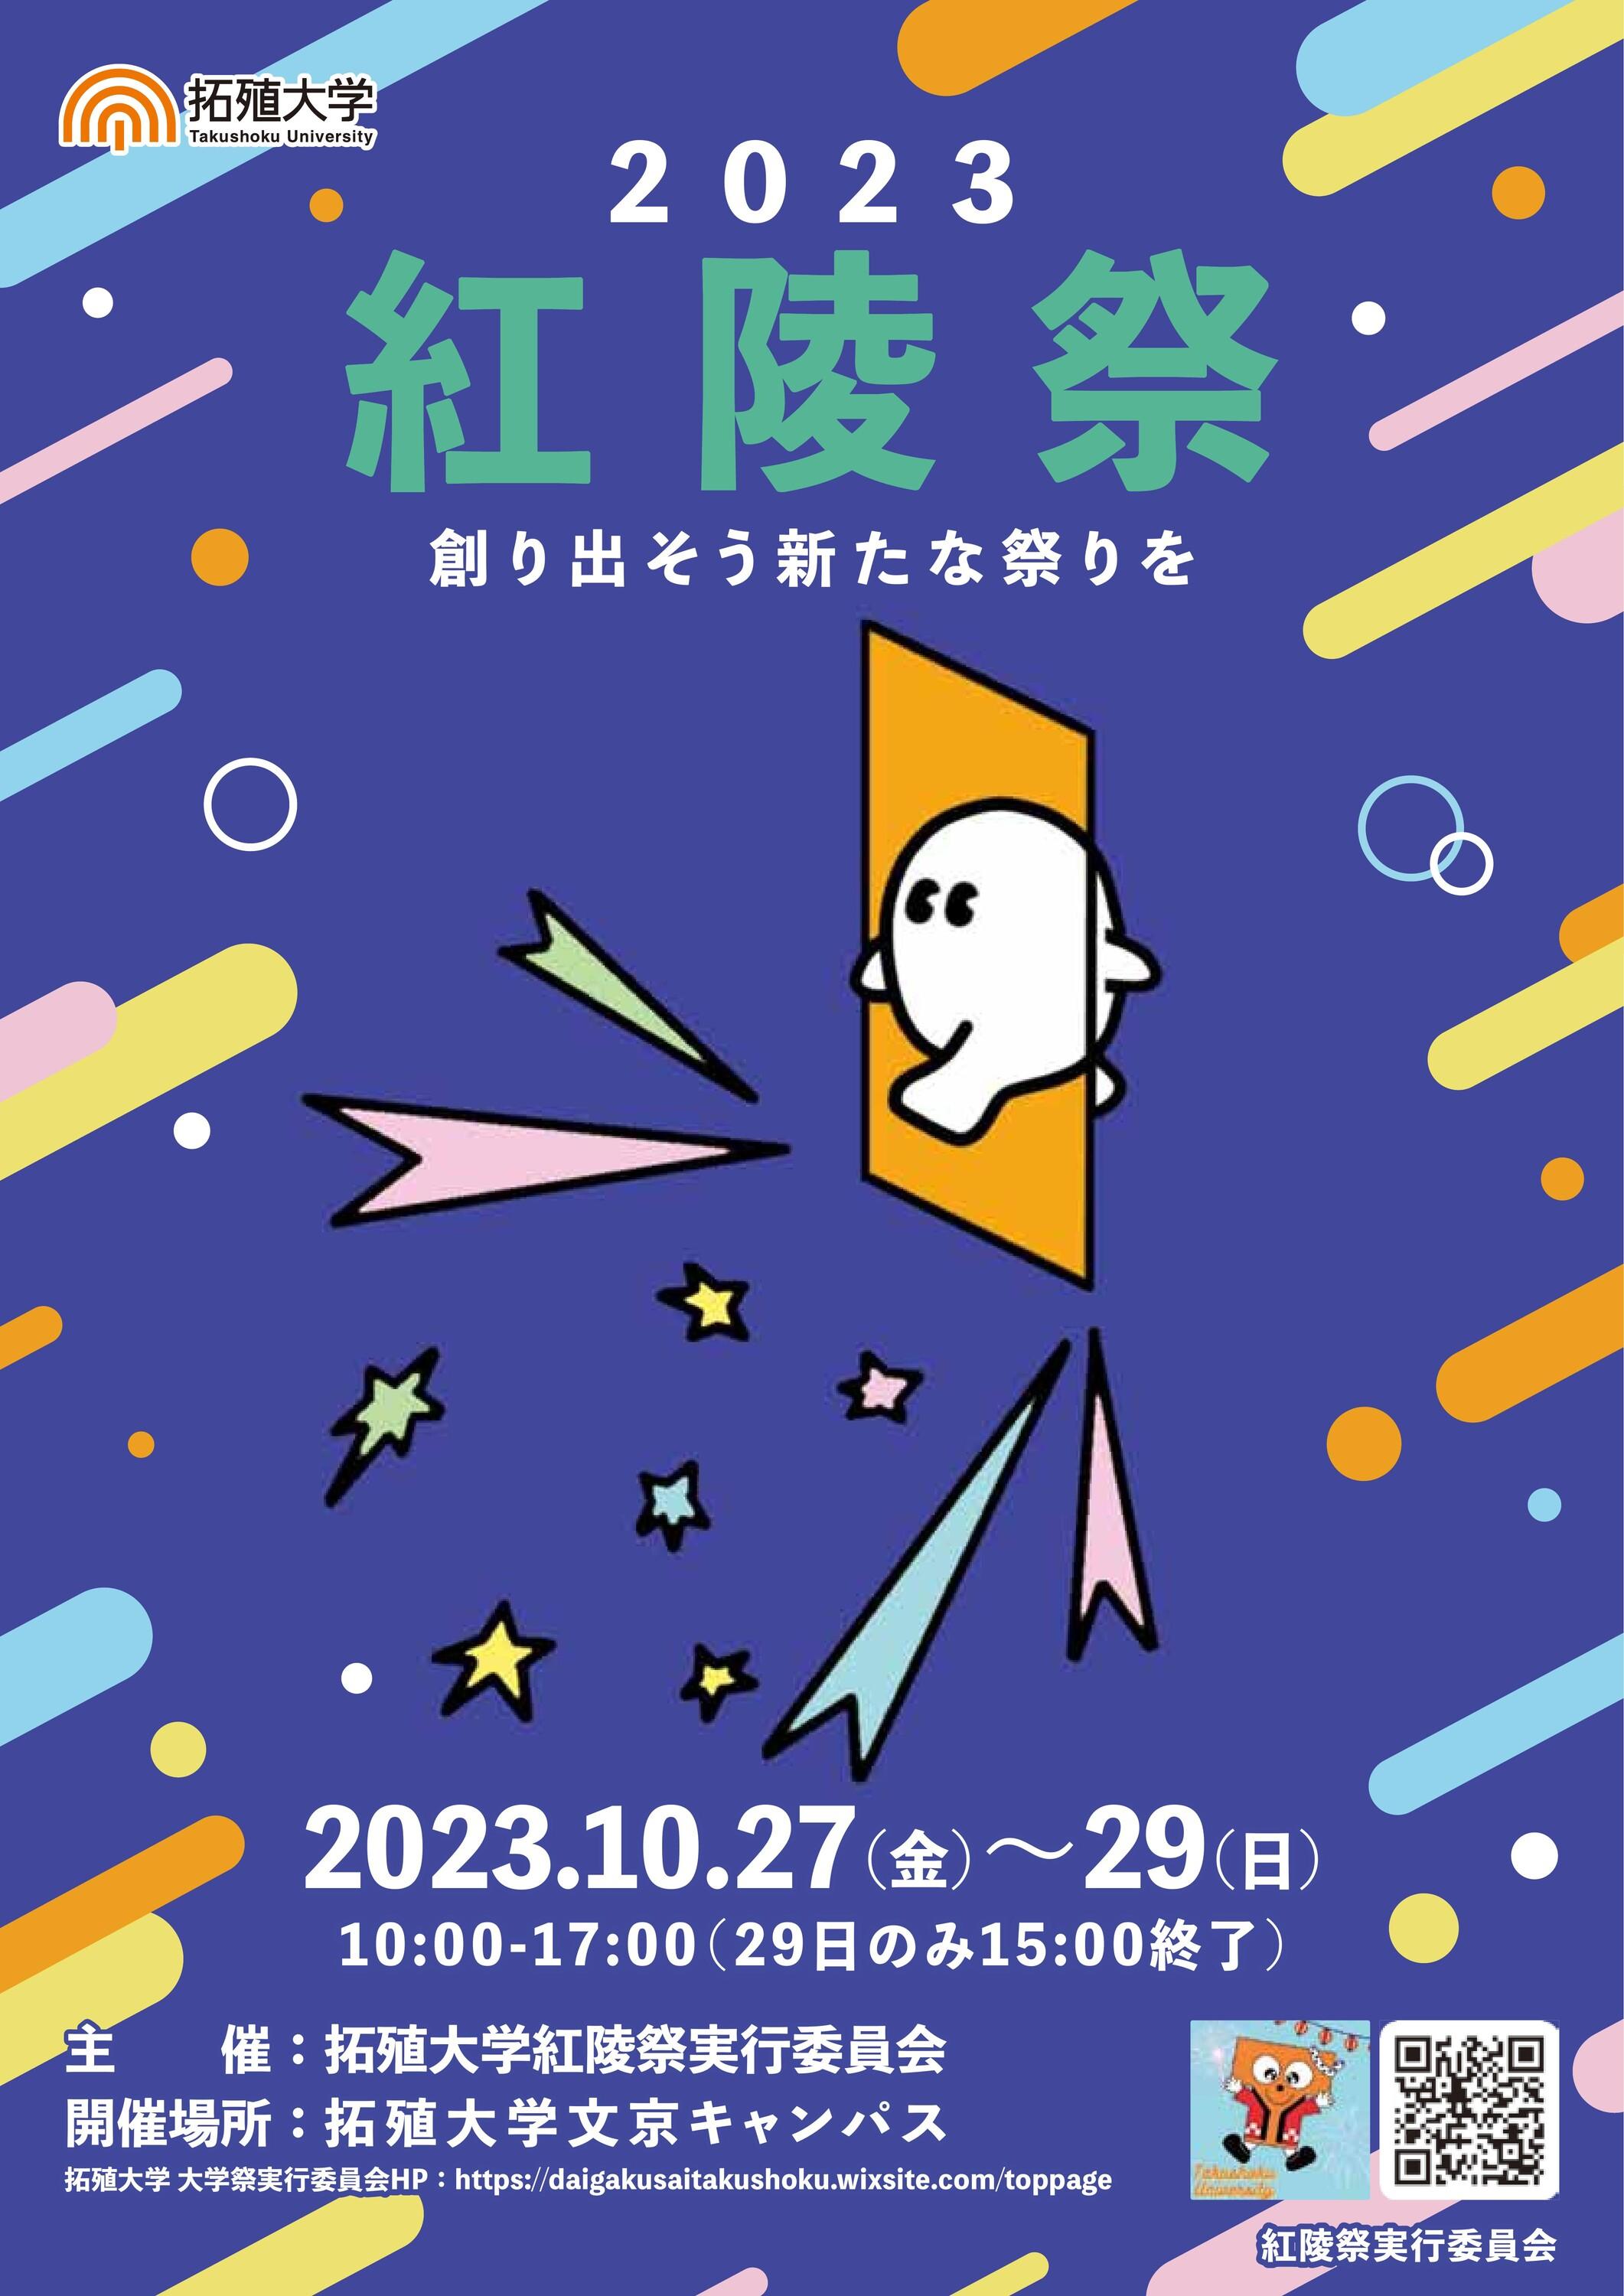 拓殖大学が大学祭「紅陵祭」を文京キャンパスにて開催　お笑いライブ、トーク・マジックショーなど目玉イベントが満載